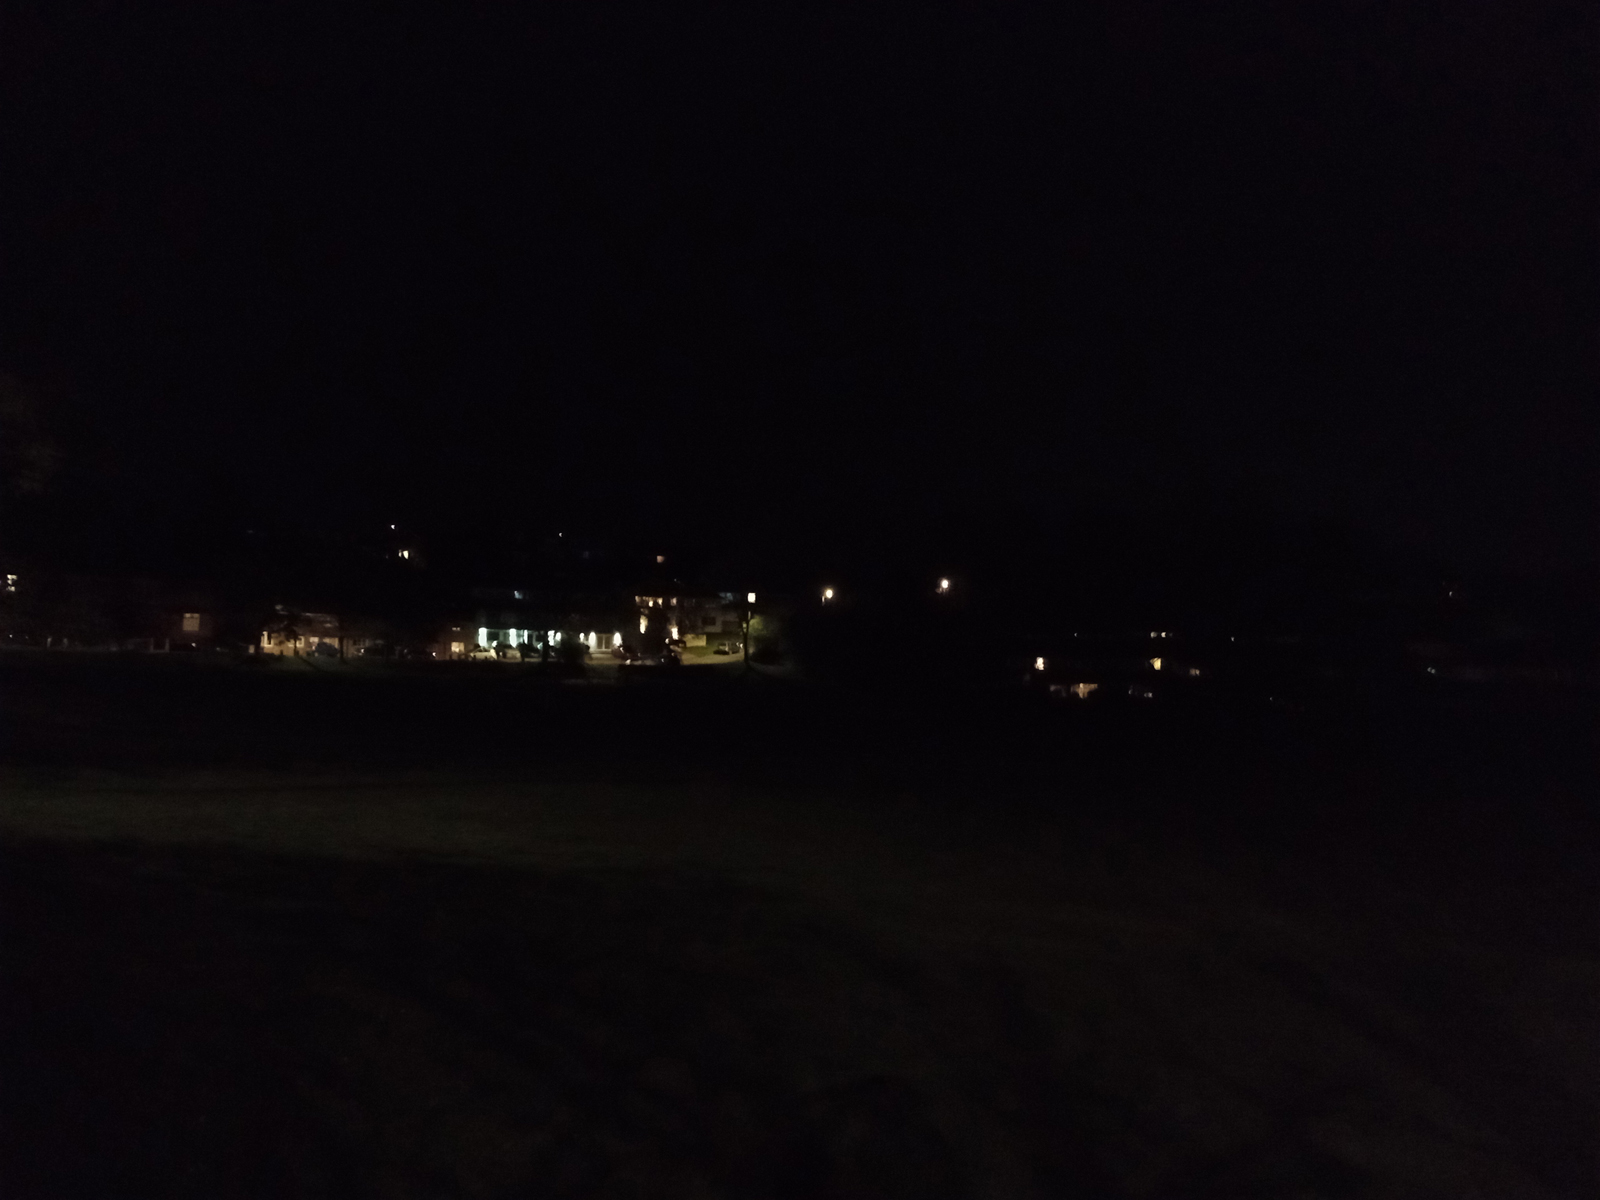 Moto G22 camera sample showing a park at night